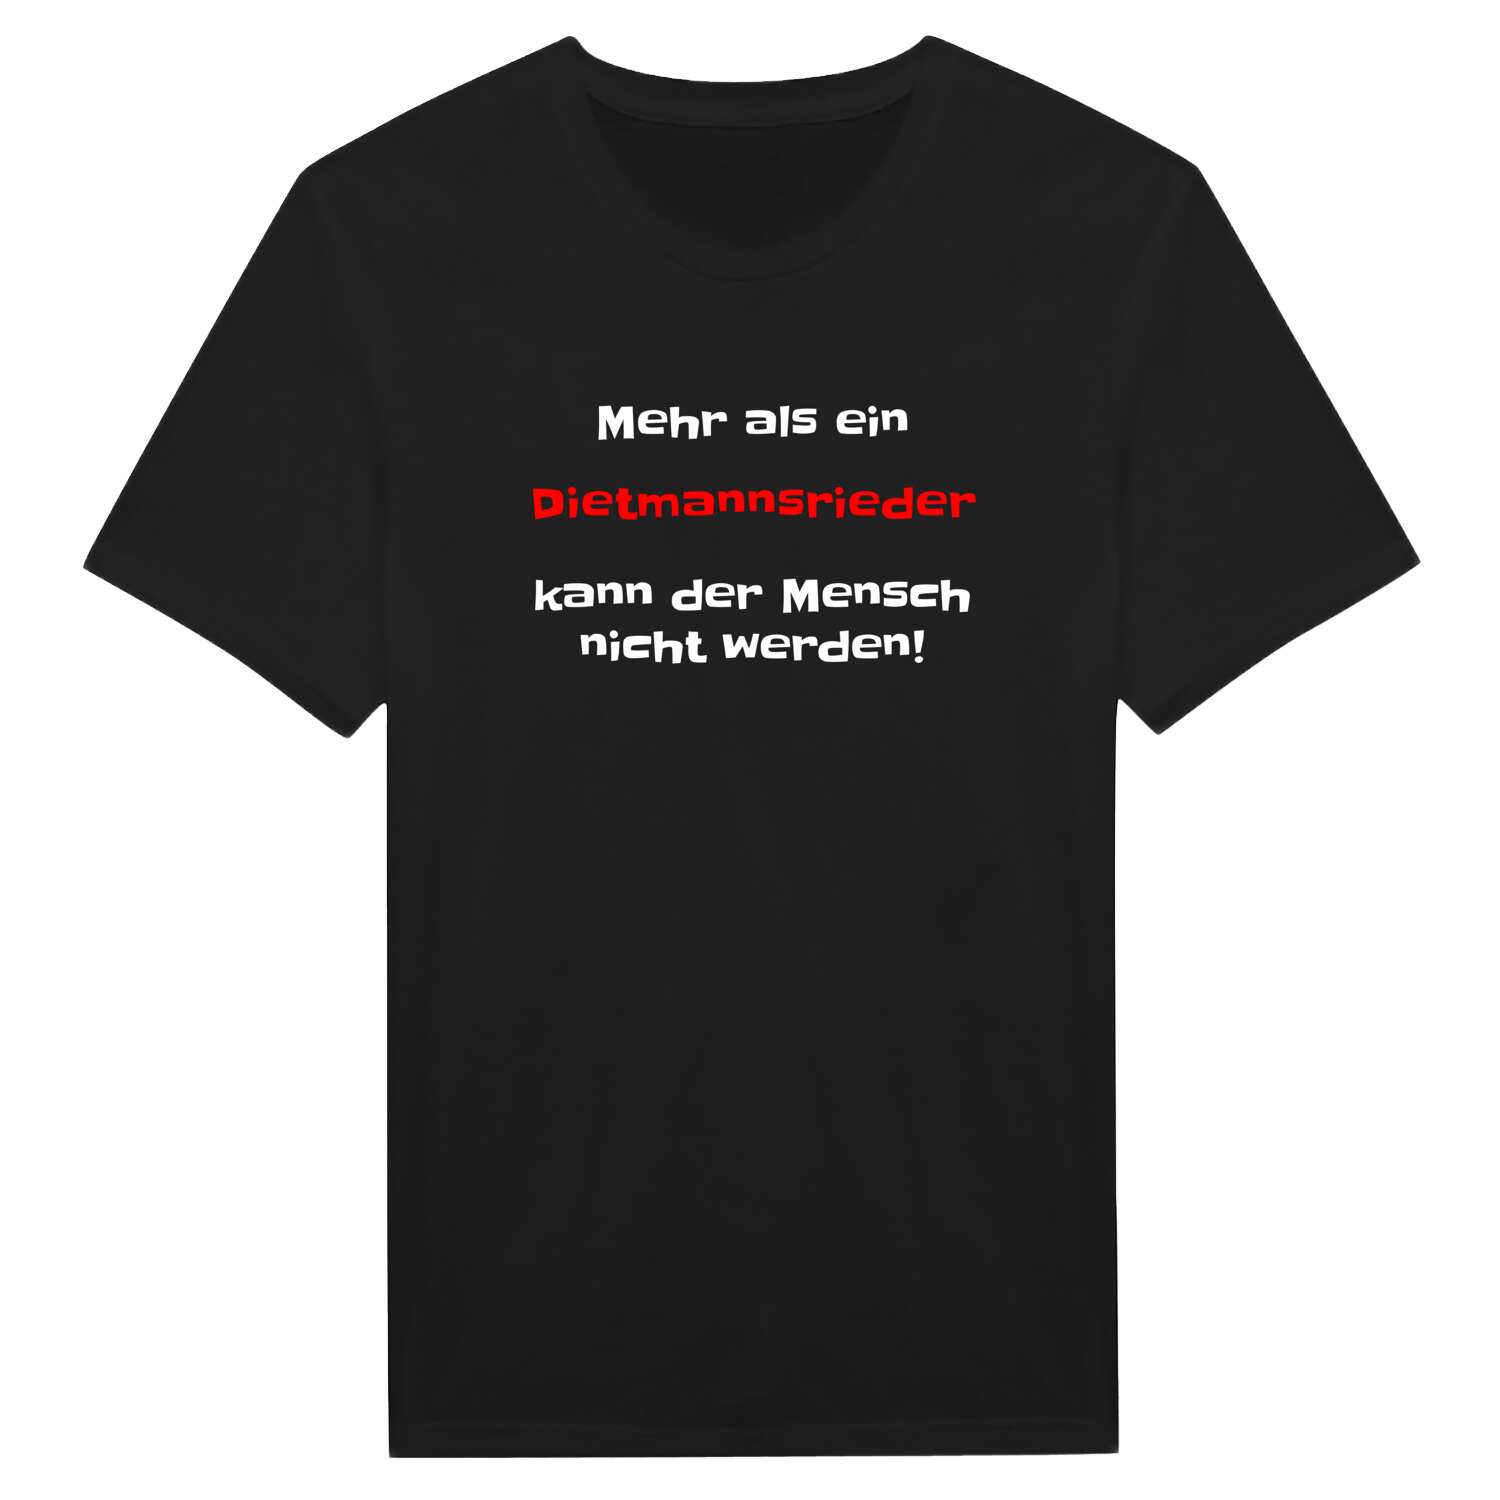 Dietmannsried T-Shirt »Mehr als ein«